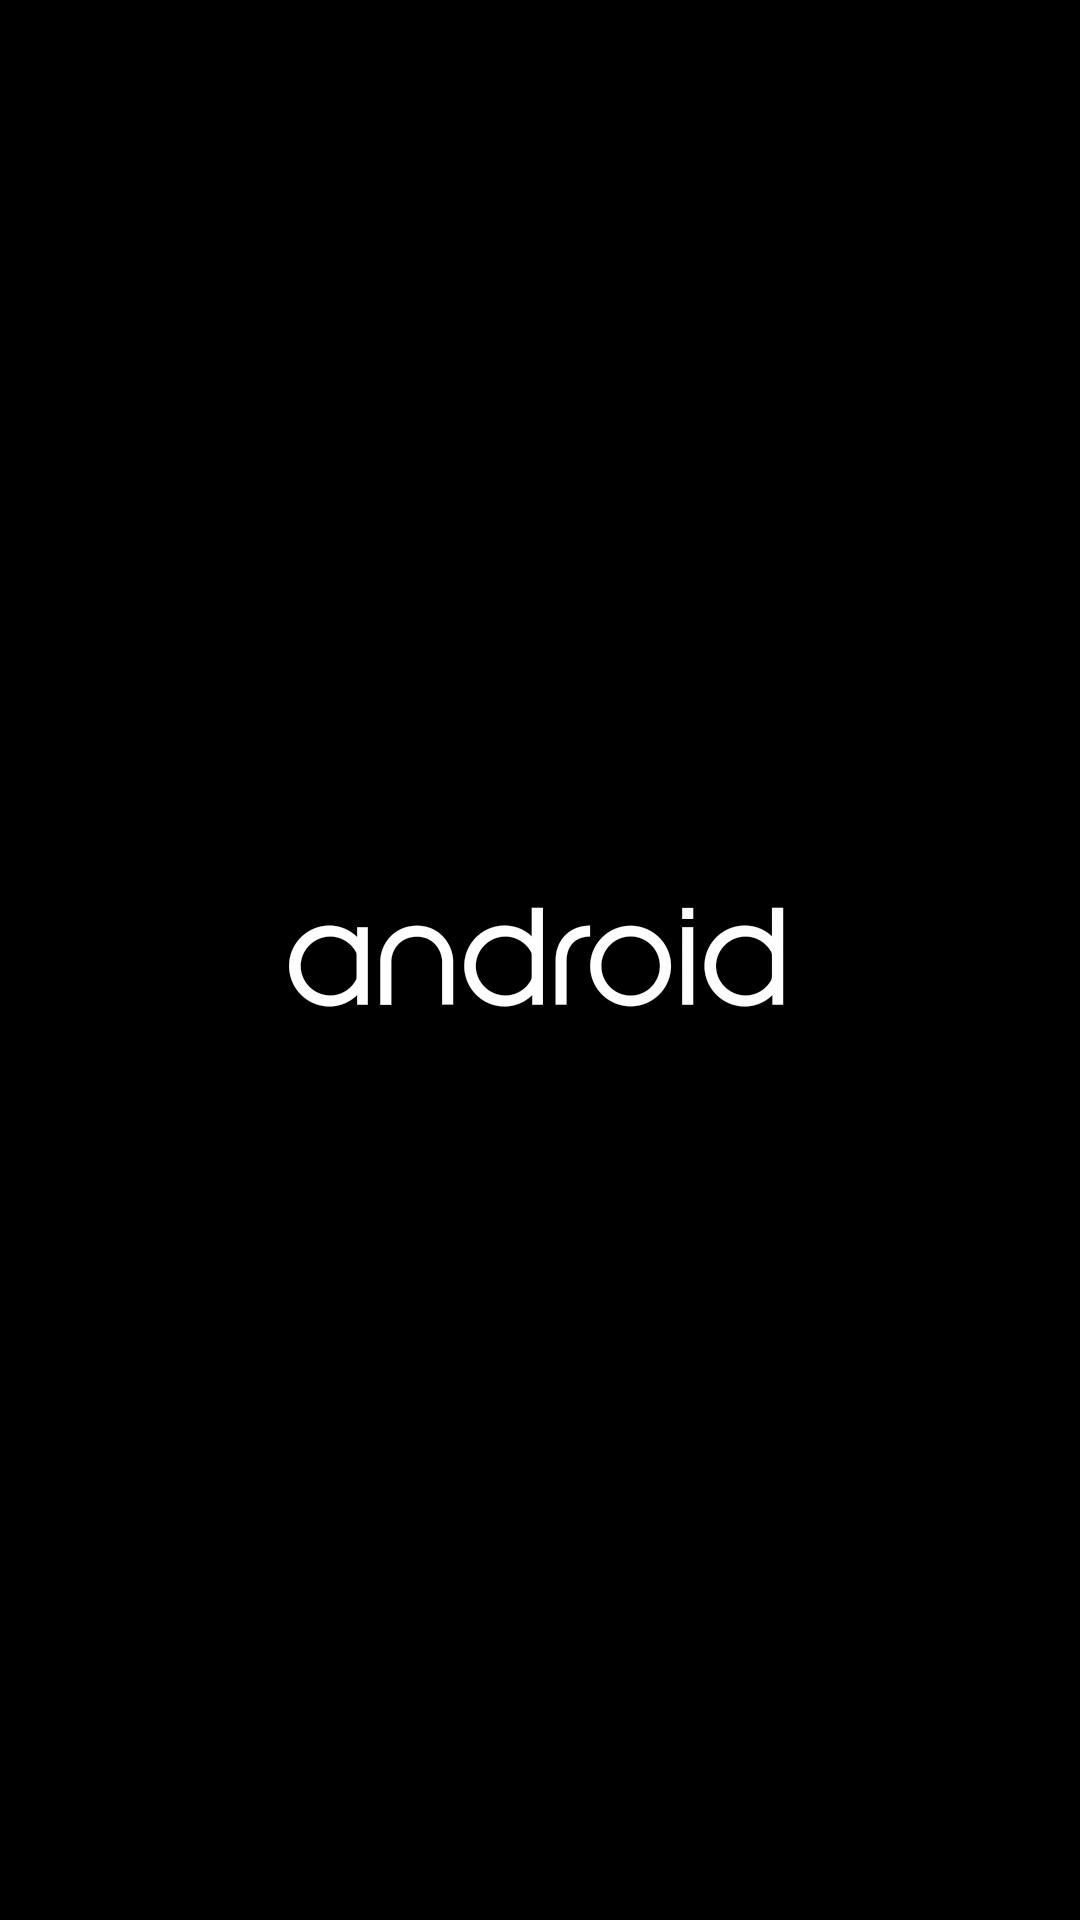 Андроид бай. Логотип андроид. Android надпись. Android Boot logo. Надписи андроид на смартфон.